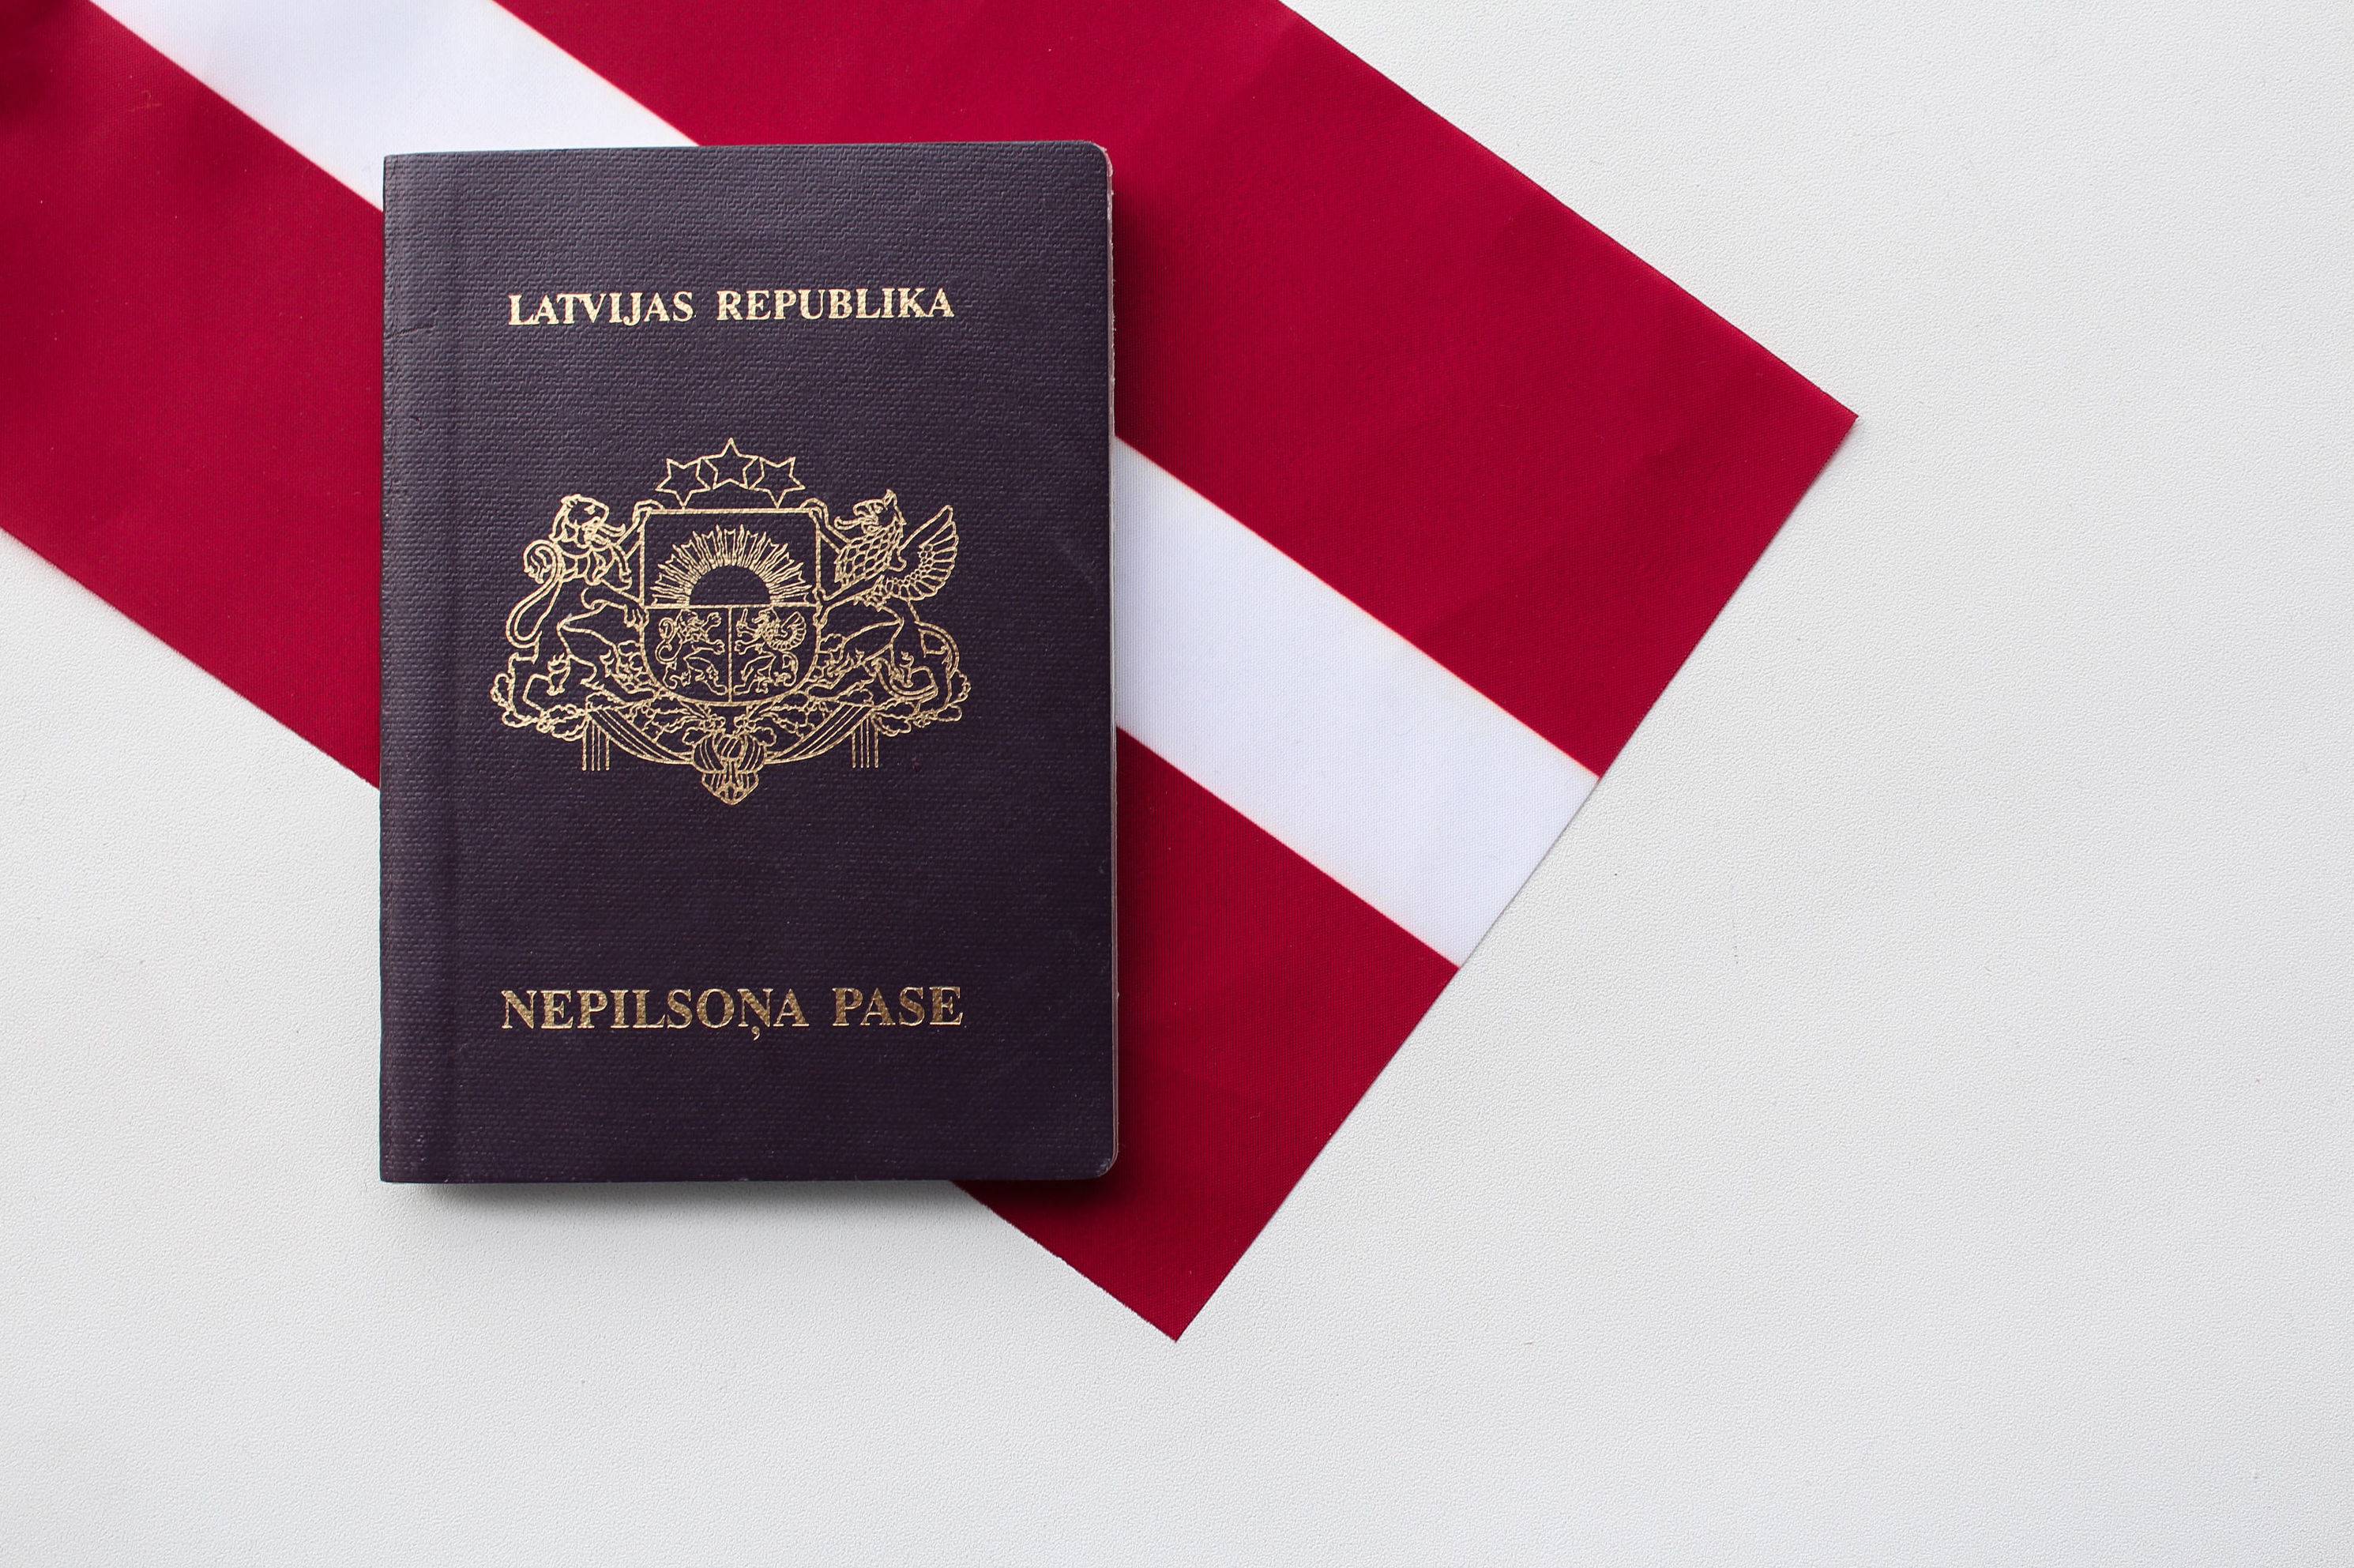 Как гражданину россии получить гражданство или статус негражданина, имея вид на жительство в латвии